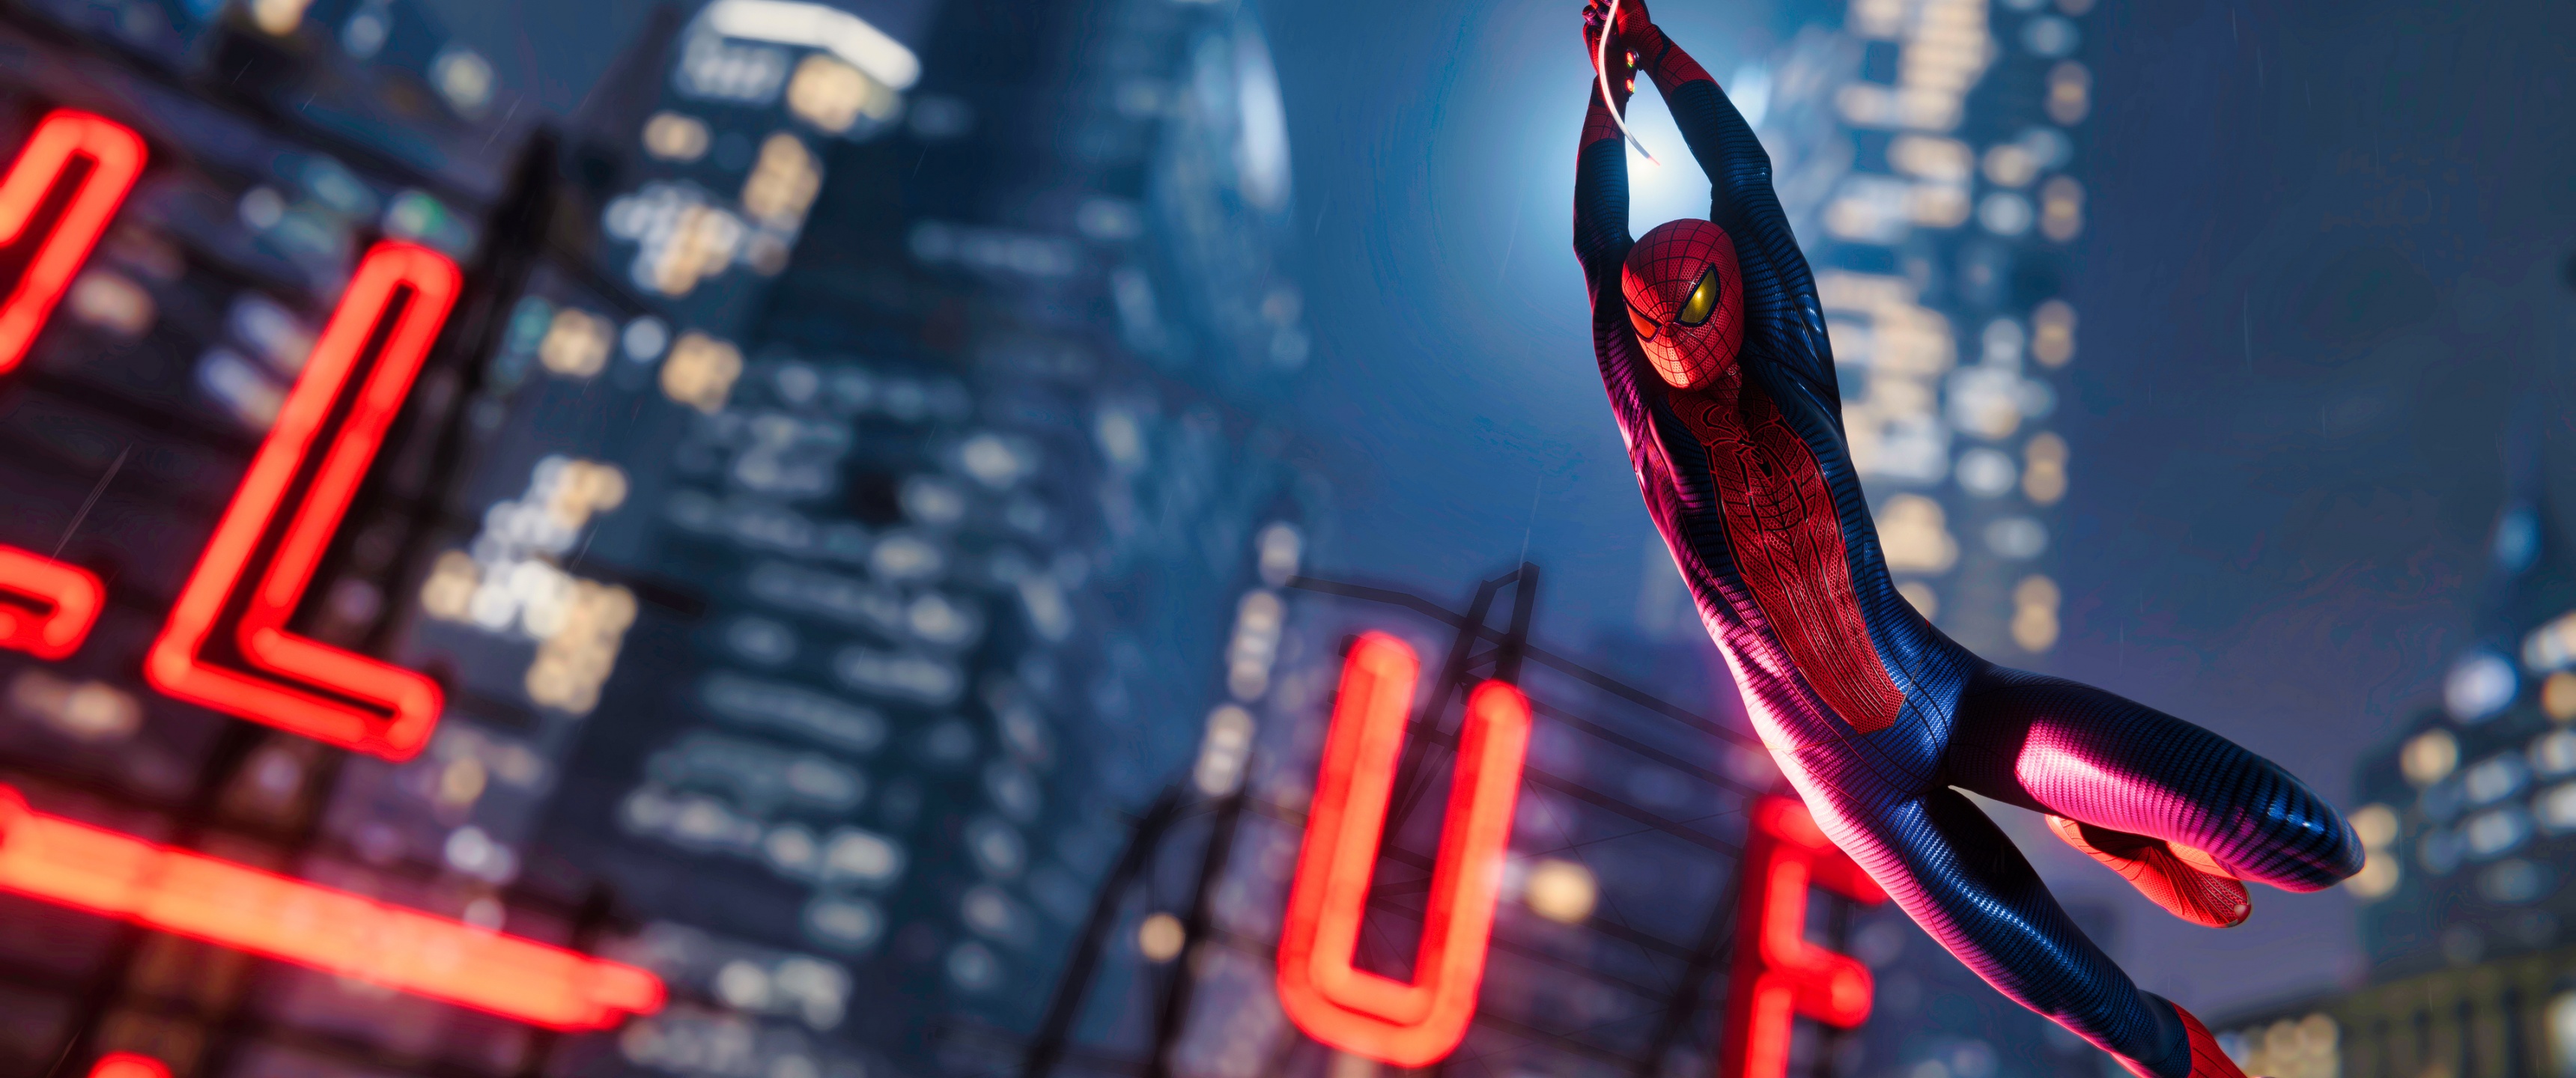 Spider-Man là một trong những anh hùng được yêu thích nhất trong thế giới siêu anh hùng. Trải nghiệm cảm giác như là Spider-Man và chống lại bọn tội phạm trên đường phố thành phố. Hãy xem hình ảnh về Spider-Man và khám phá những khả năng phi thường của anh hùng này.